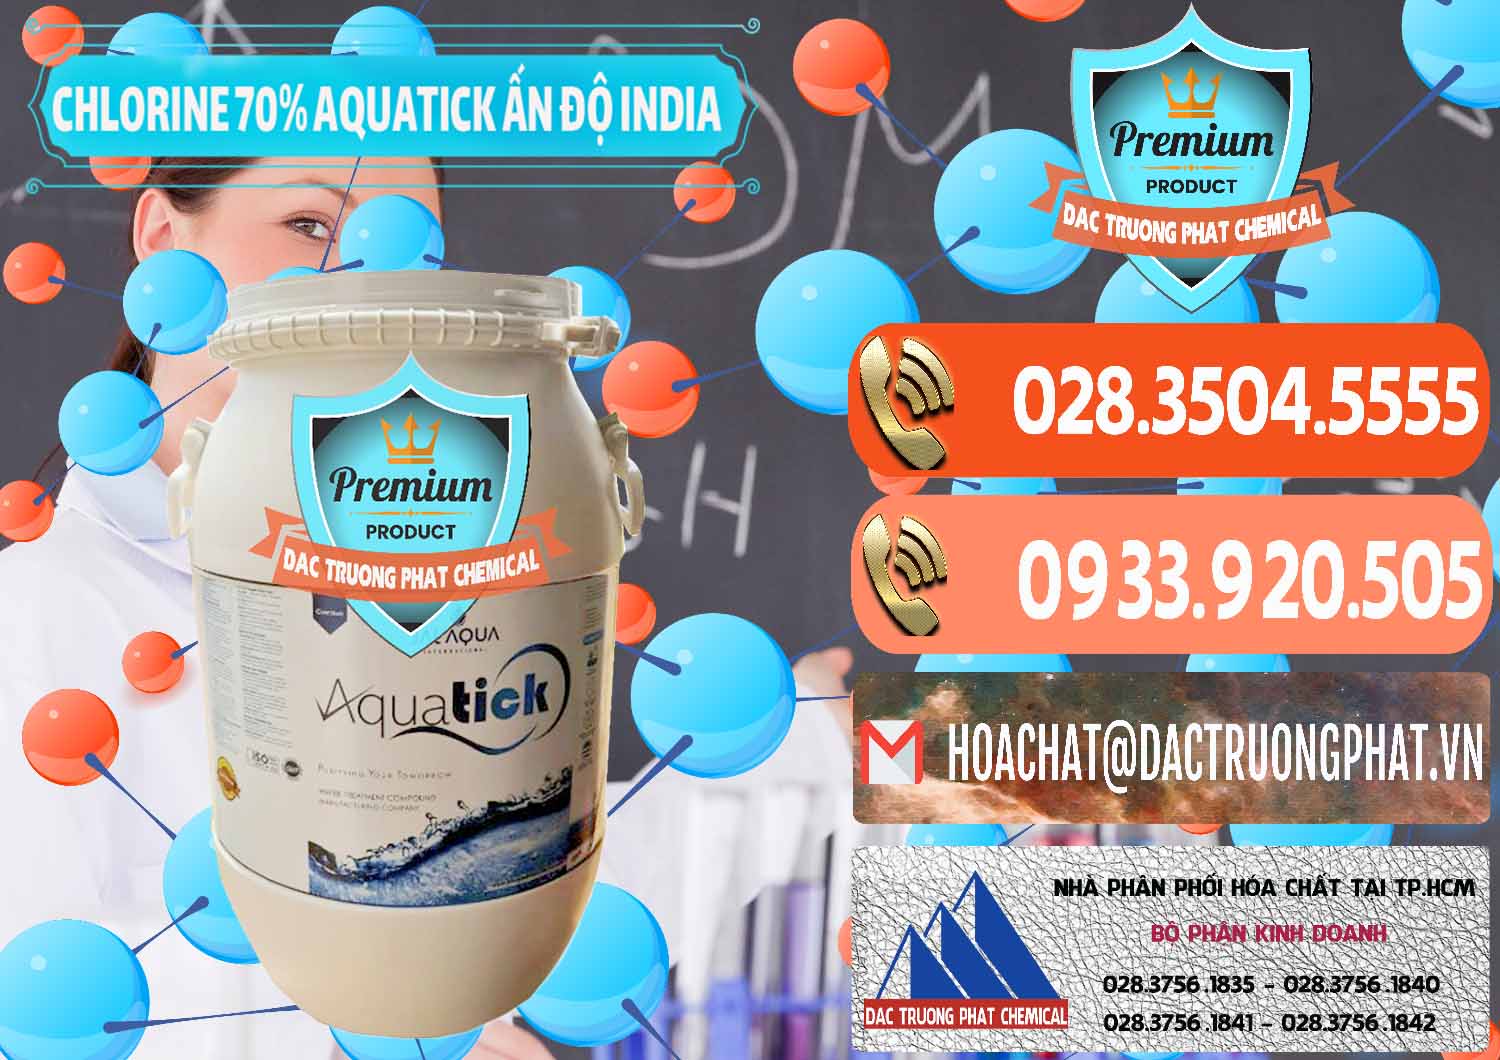 Nơi chuyên cung ứng & bán Chlorine – Clorin 70% Aquatick Jal Aqua Ấn Độ India - 0215 - Công ty chuyên nhập khẩu & cung cấp hóa chất tại TP.HCM - hoachatmientay.com